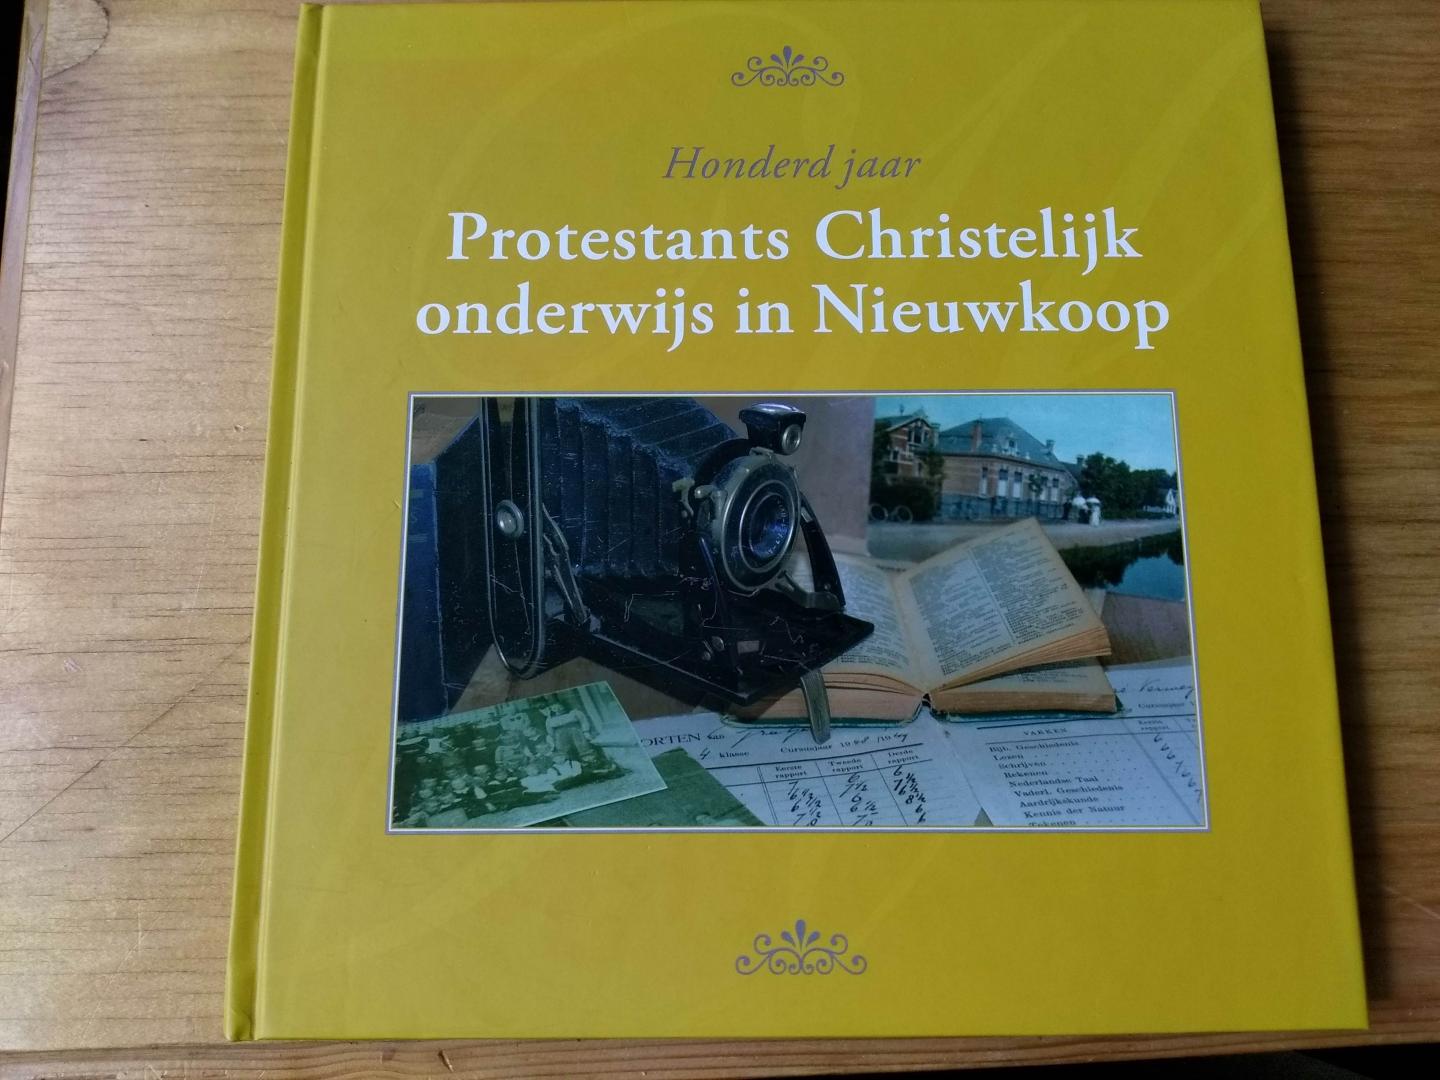 Hoogendoorn, Anneke & Stijnie Goes - Honderd jaar Protestants Christelijk onderwijs in Nieuwkoop